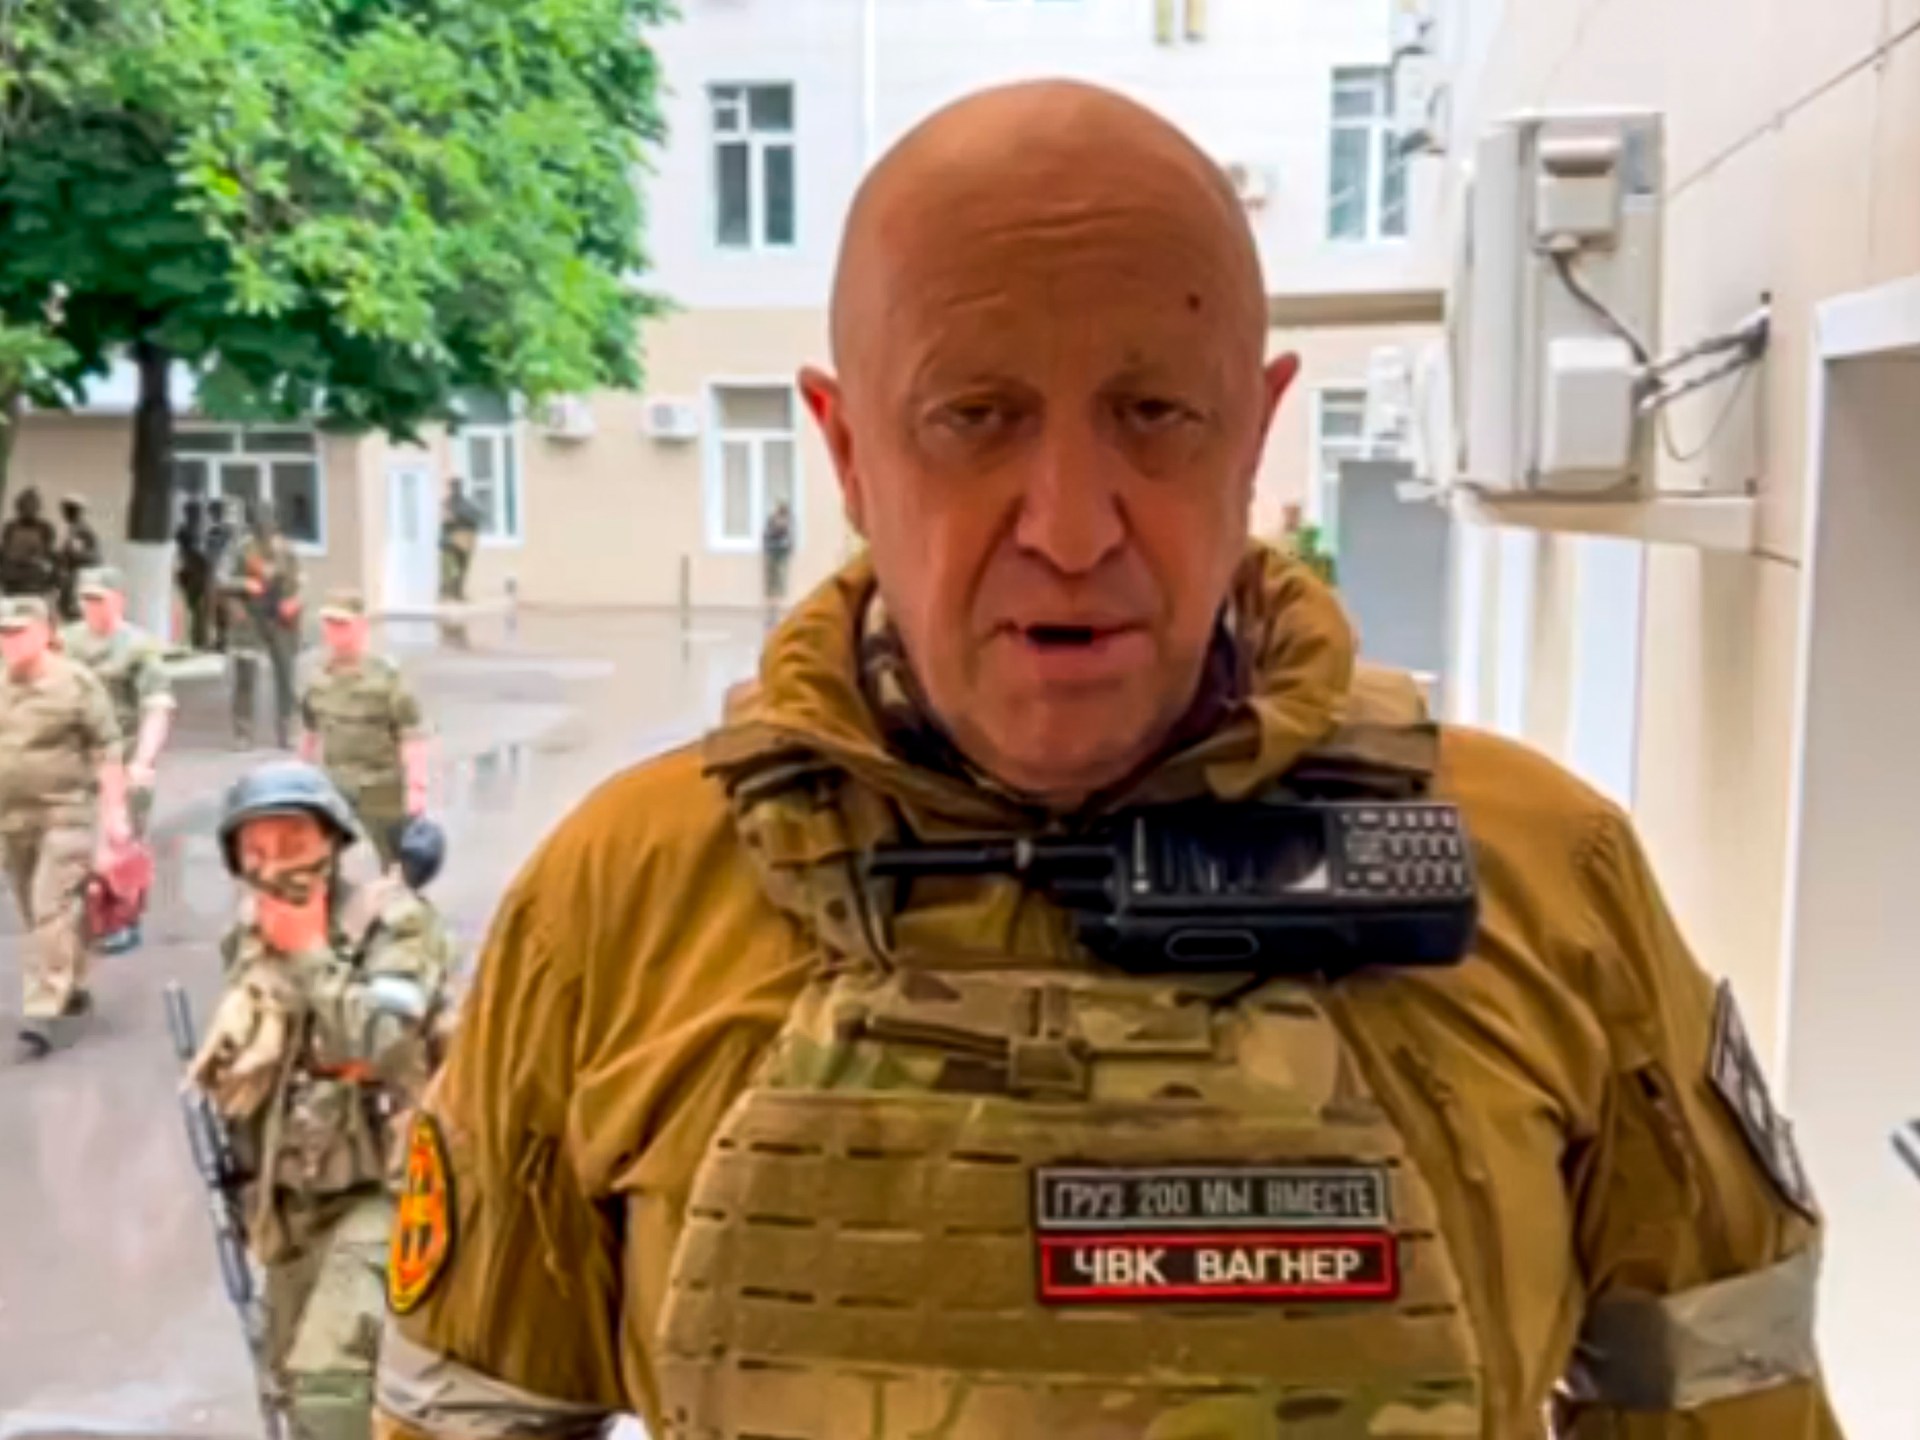 바그너 추장, 러시아 반란 이후 첫 비디오 공개, 아프리카에서의 존재 암시 |  러시아와 우크라이나 간의 전쟁 소식